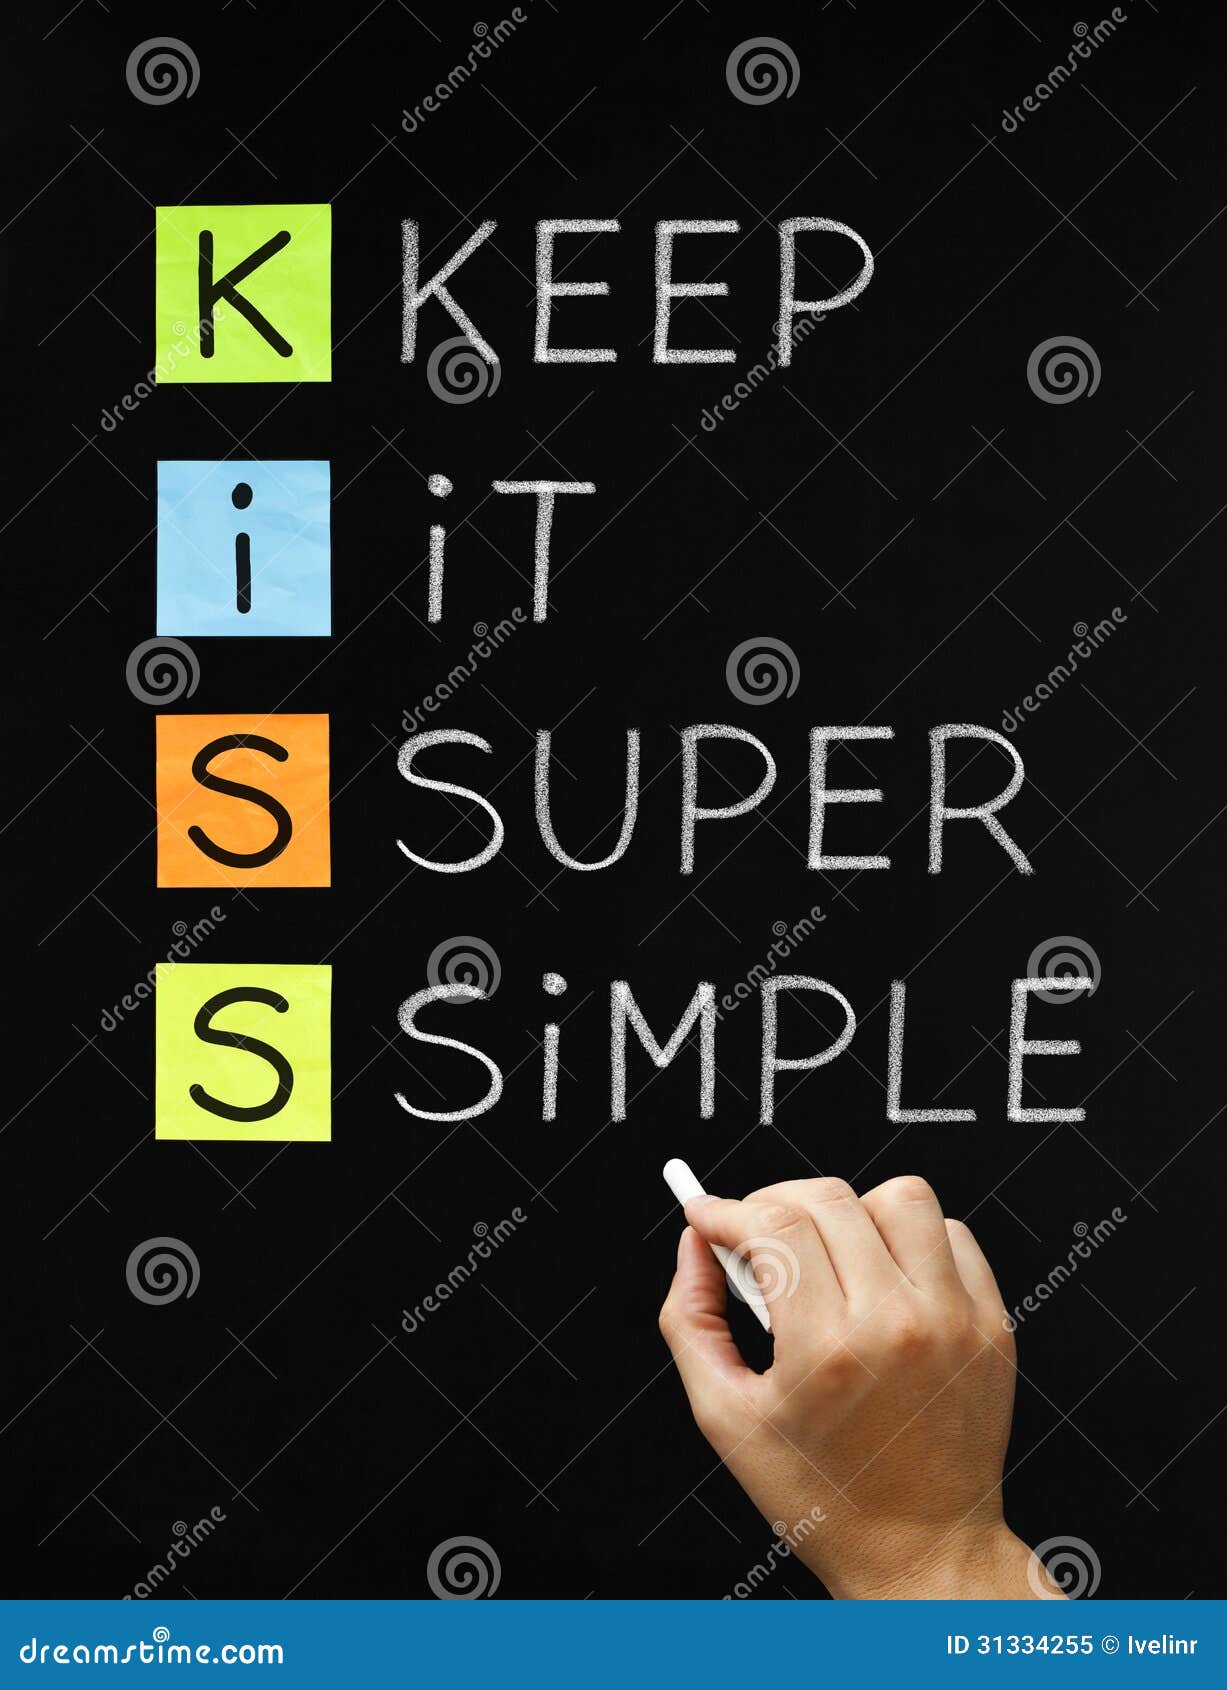 keep it super simple